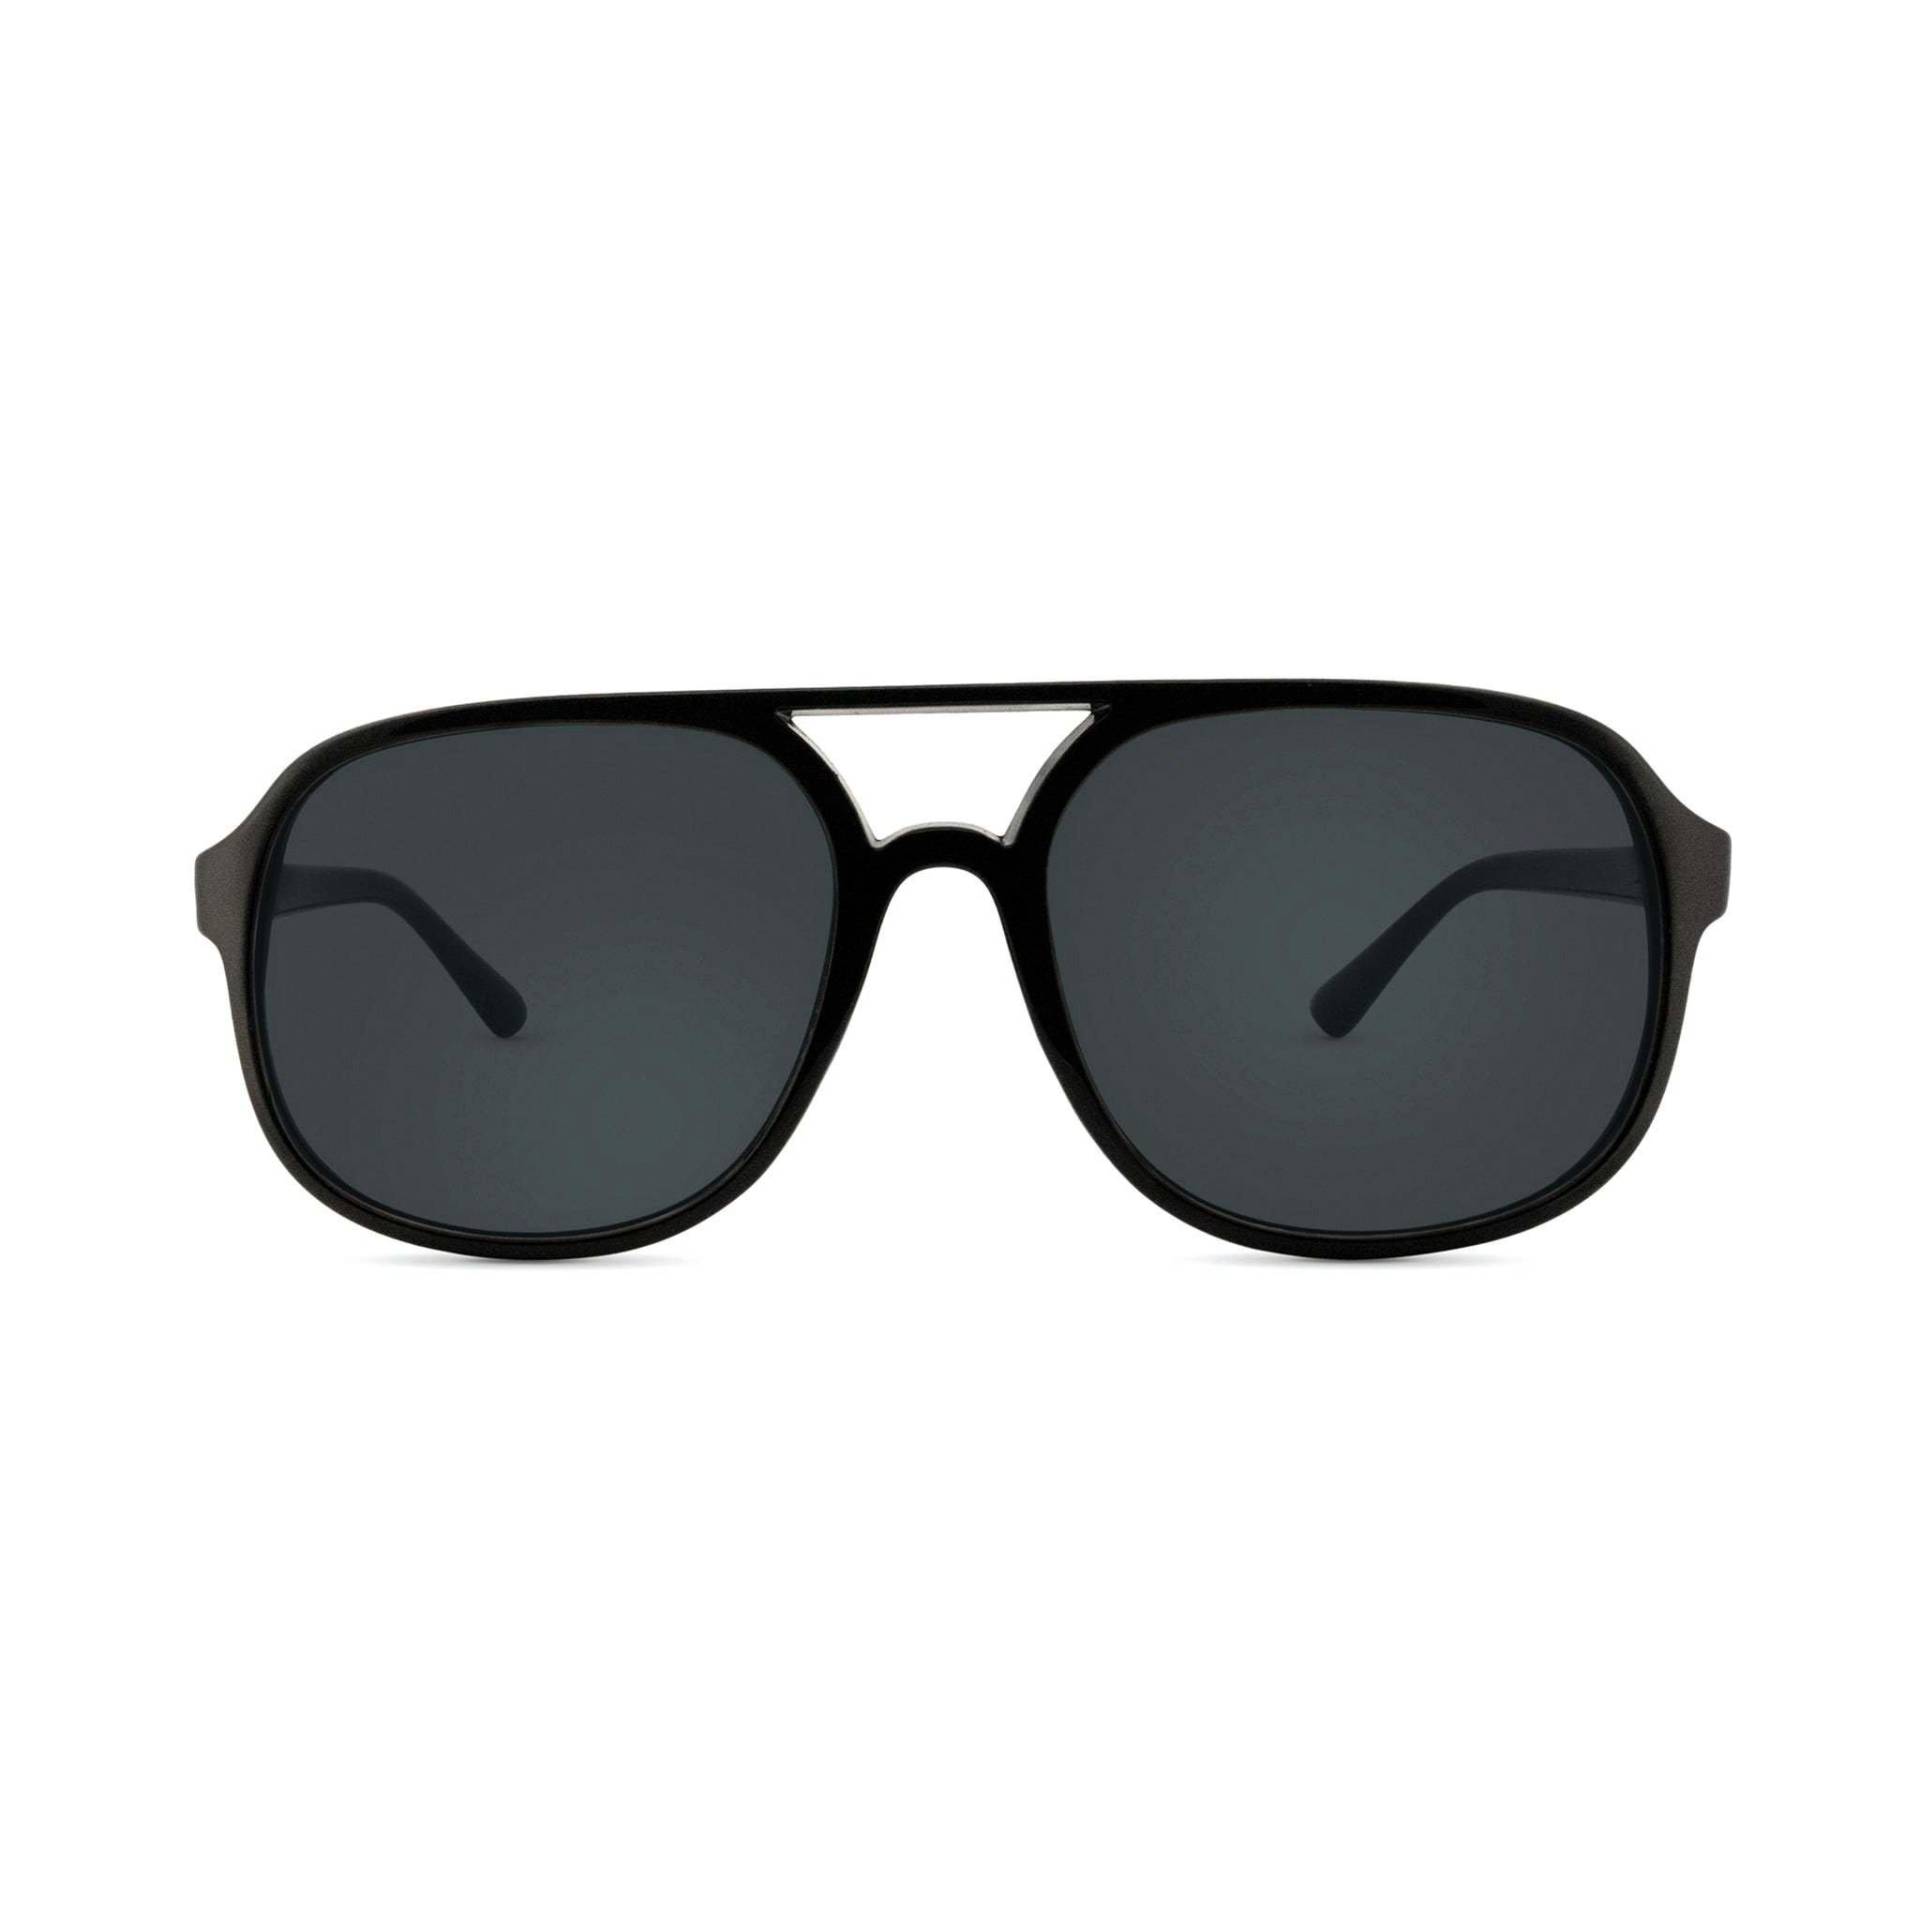 Saratoga Sonnenbrille Damen Schwarz 54mm von Nectar